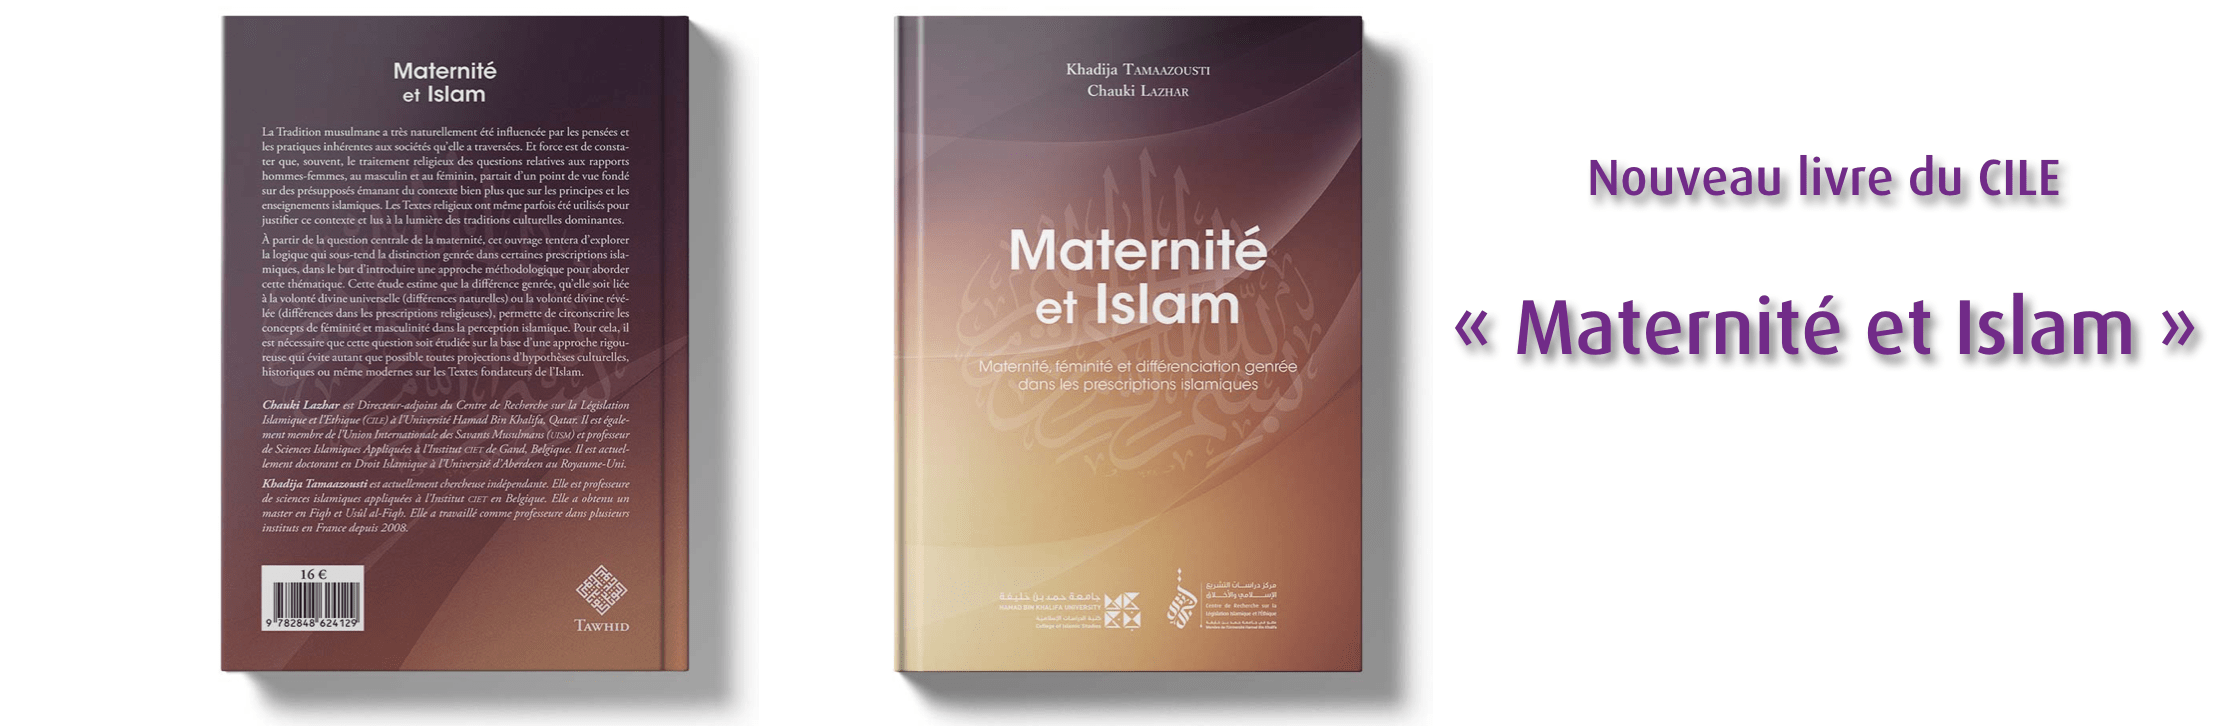 Nouveau livre du CILE "Maternité et Islam" coécrit par Khadija Tamaazousti et Chauki Lazhar